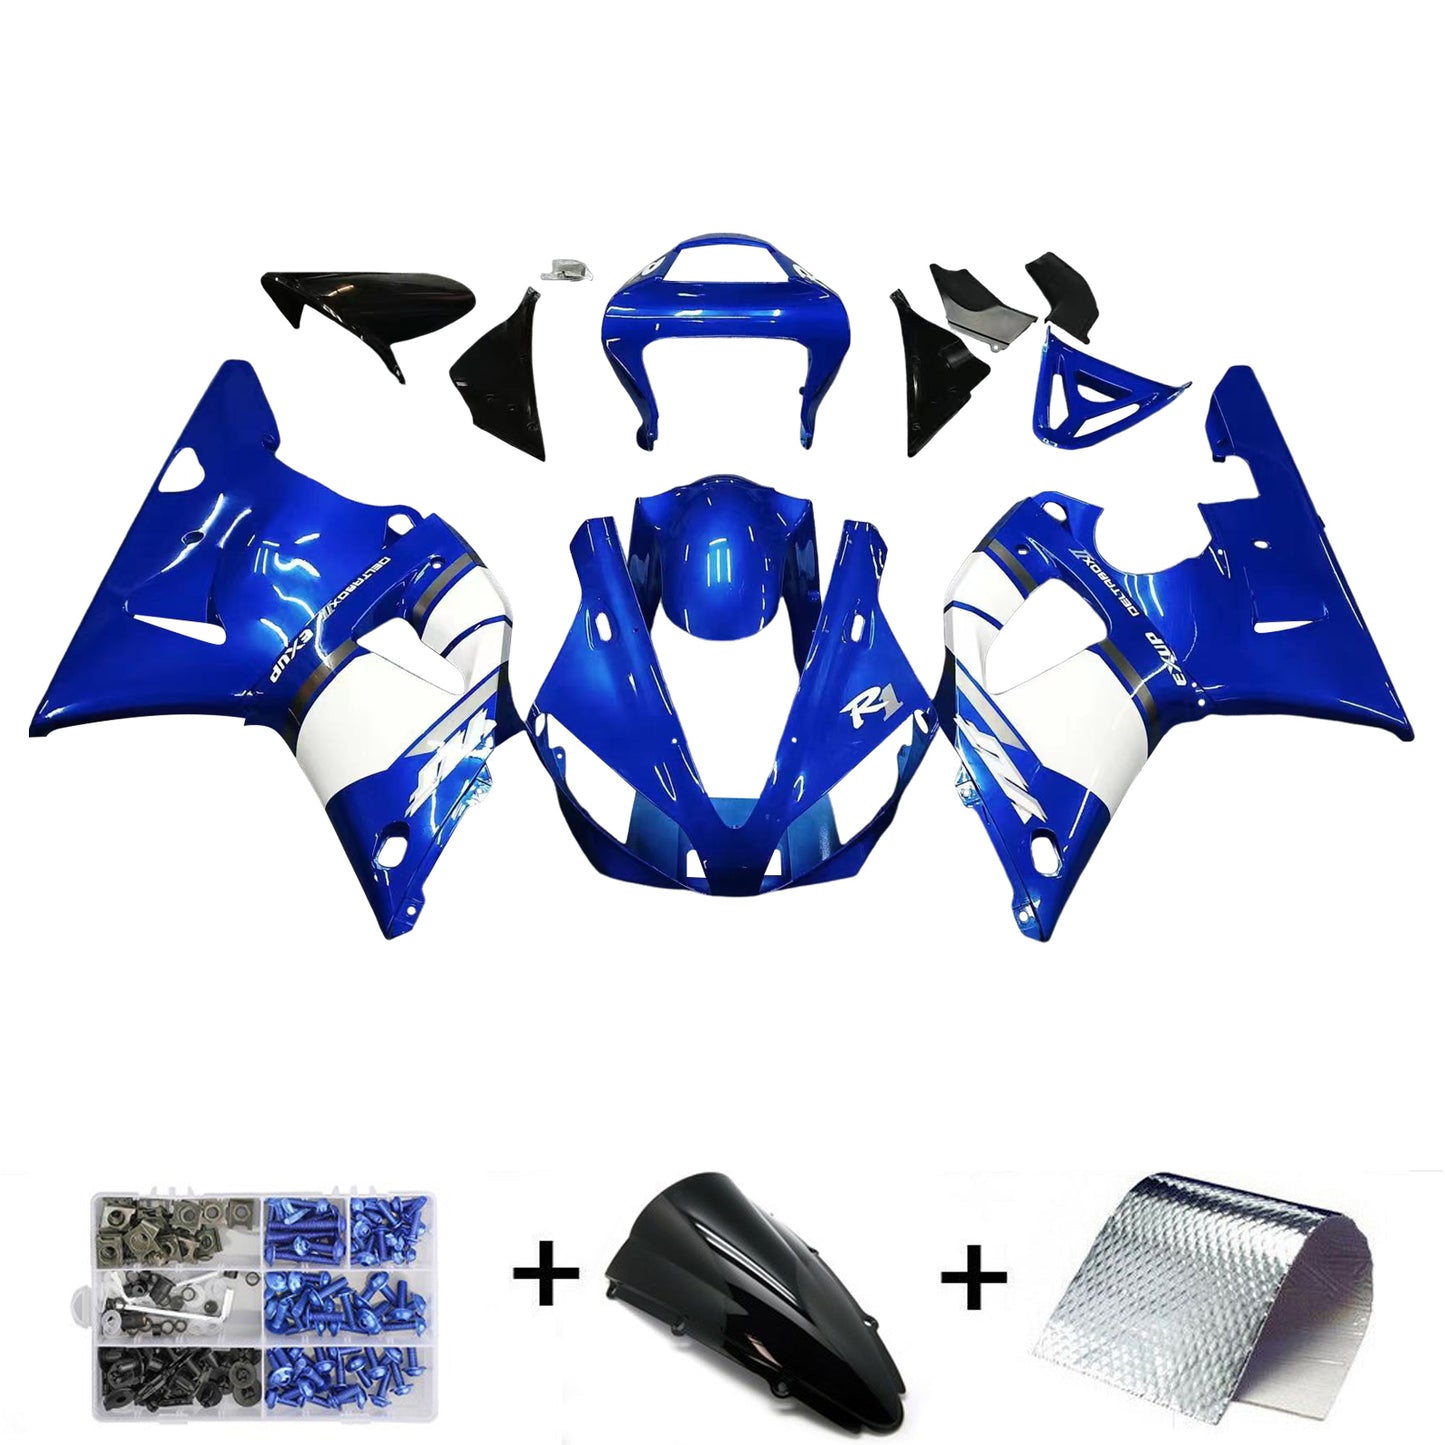 AMOTOPART kit plastique injection ABS carénage yamaha yzf r1 2000-2001 Bleu Générique